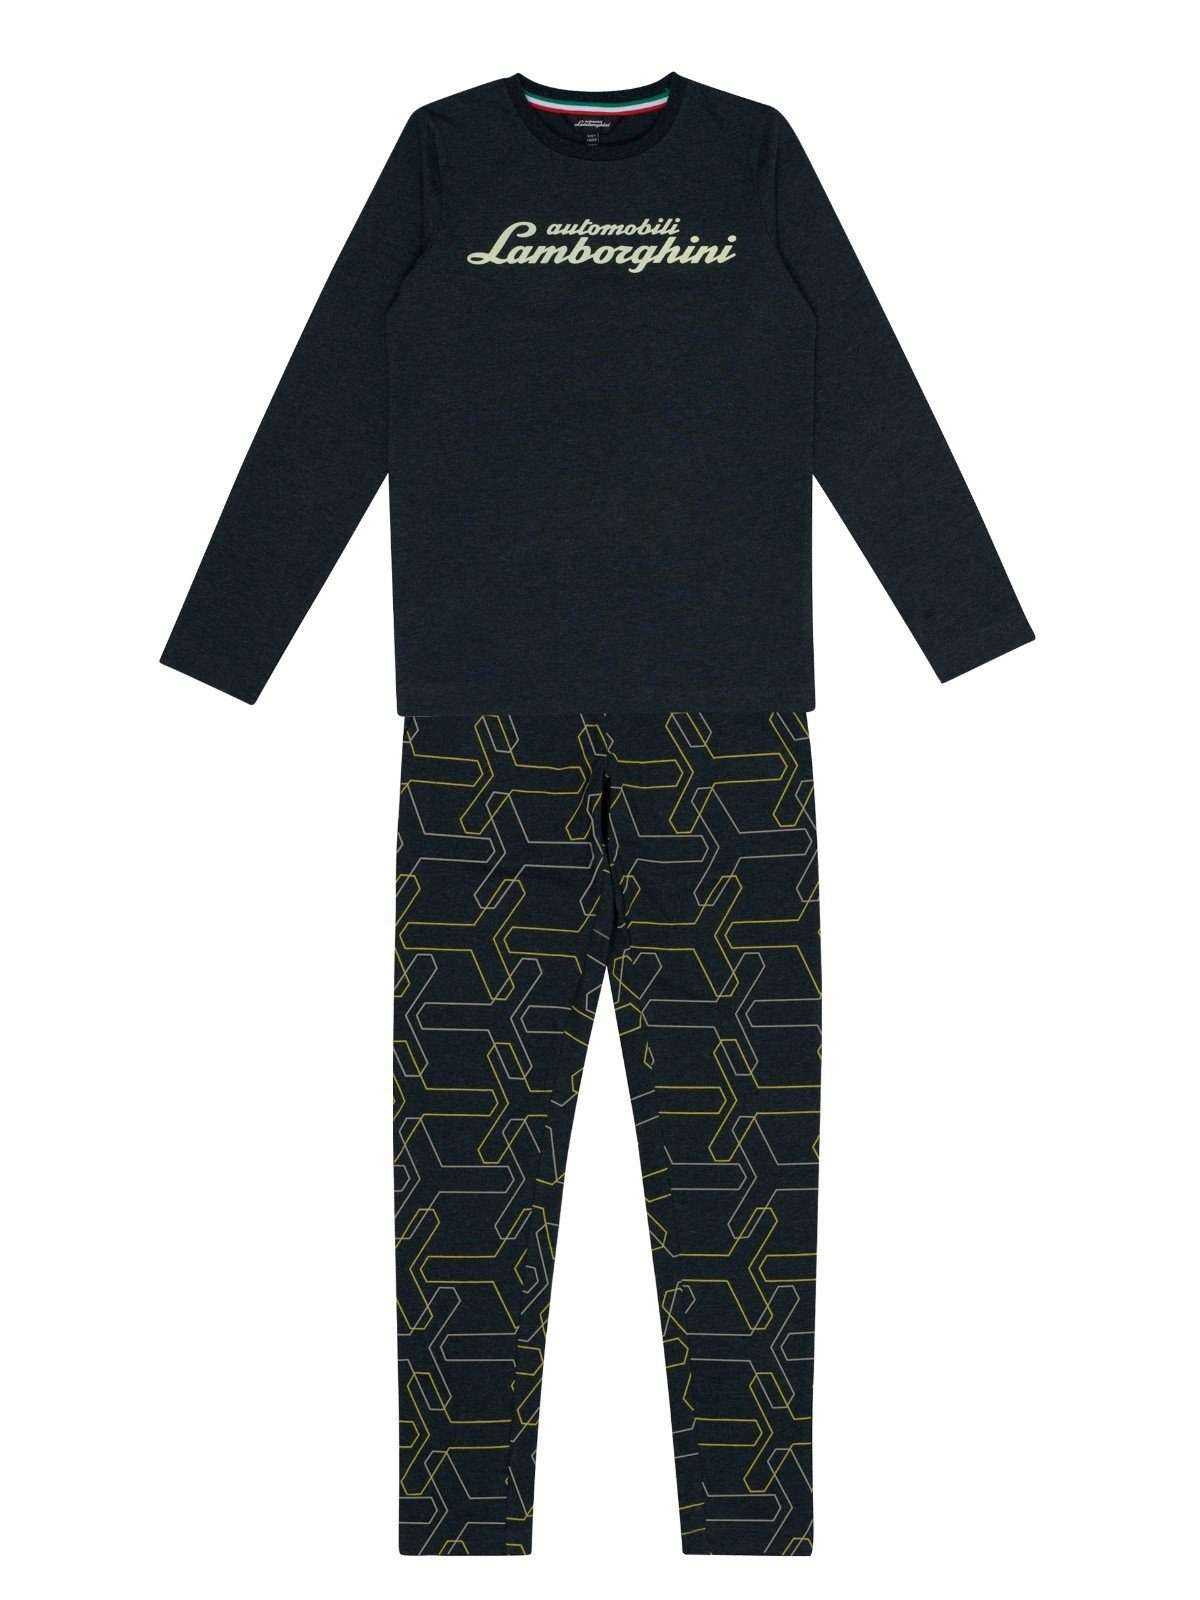 Wäsche/Bademode Nachtwäsche Automobili Lamborghini Kids Pyjama Automobili Lamborghini Kidswear Pyjama Logo und allover Y Print